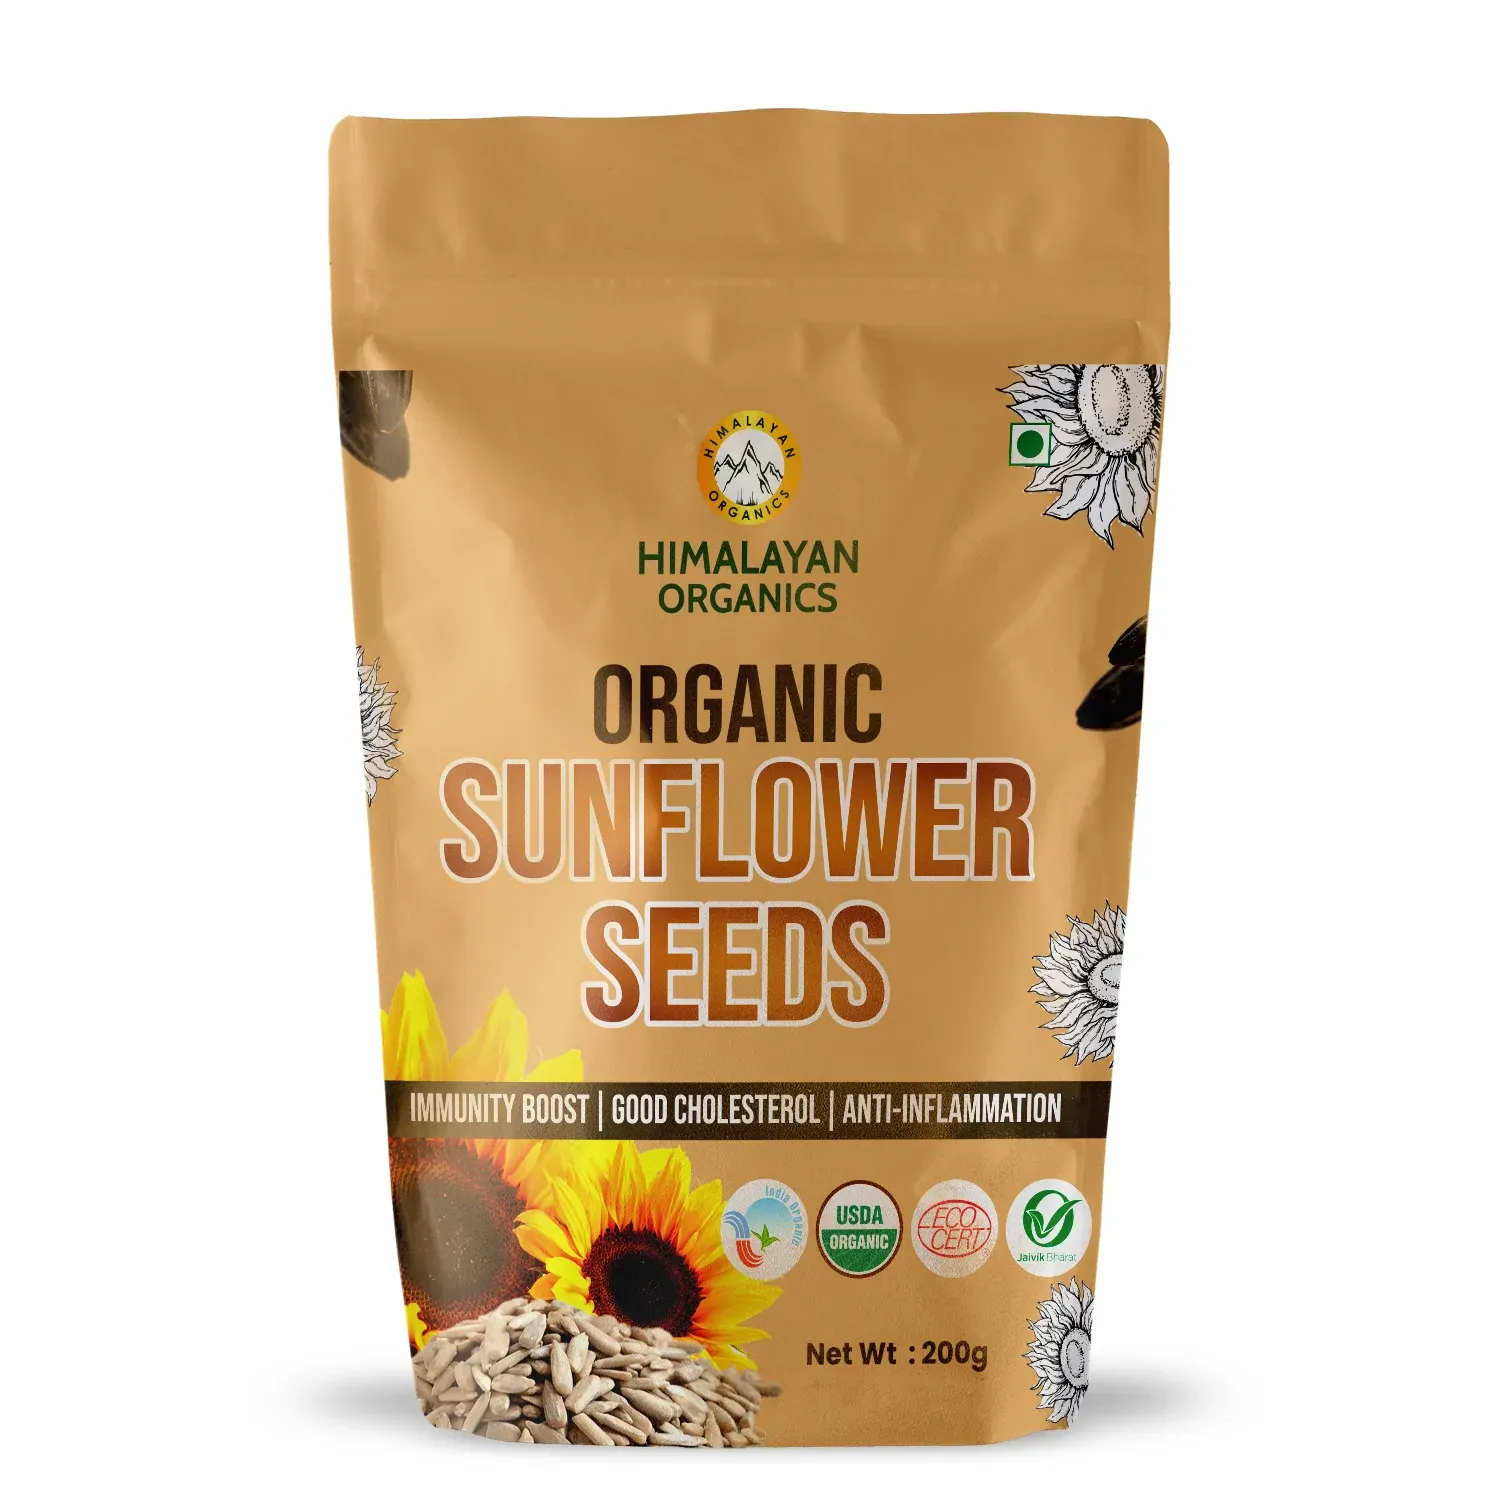 Himalayan Organics Sunflower Seeds Image